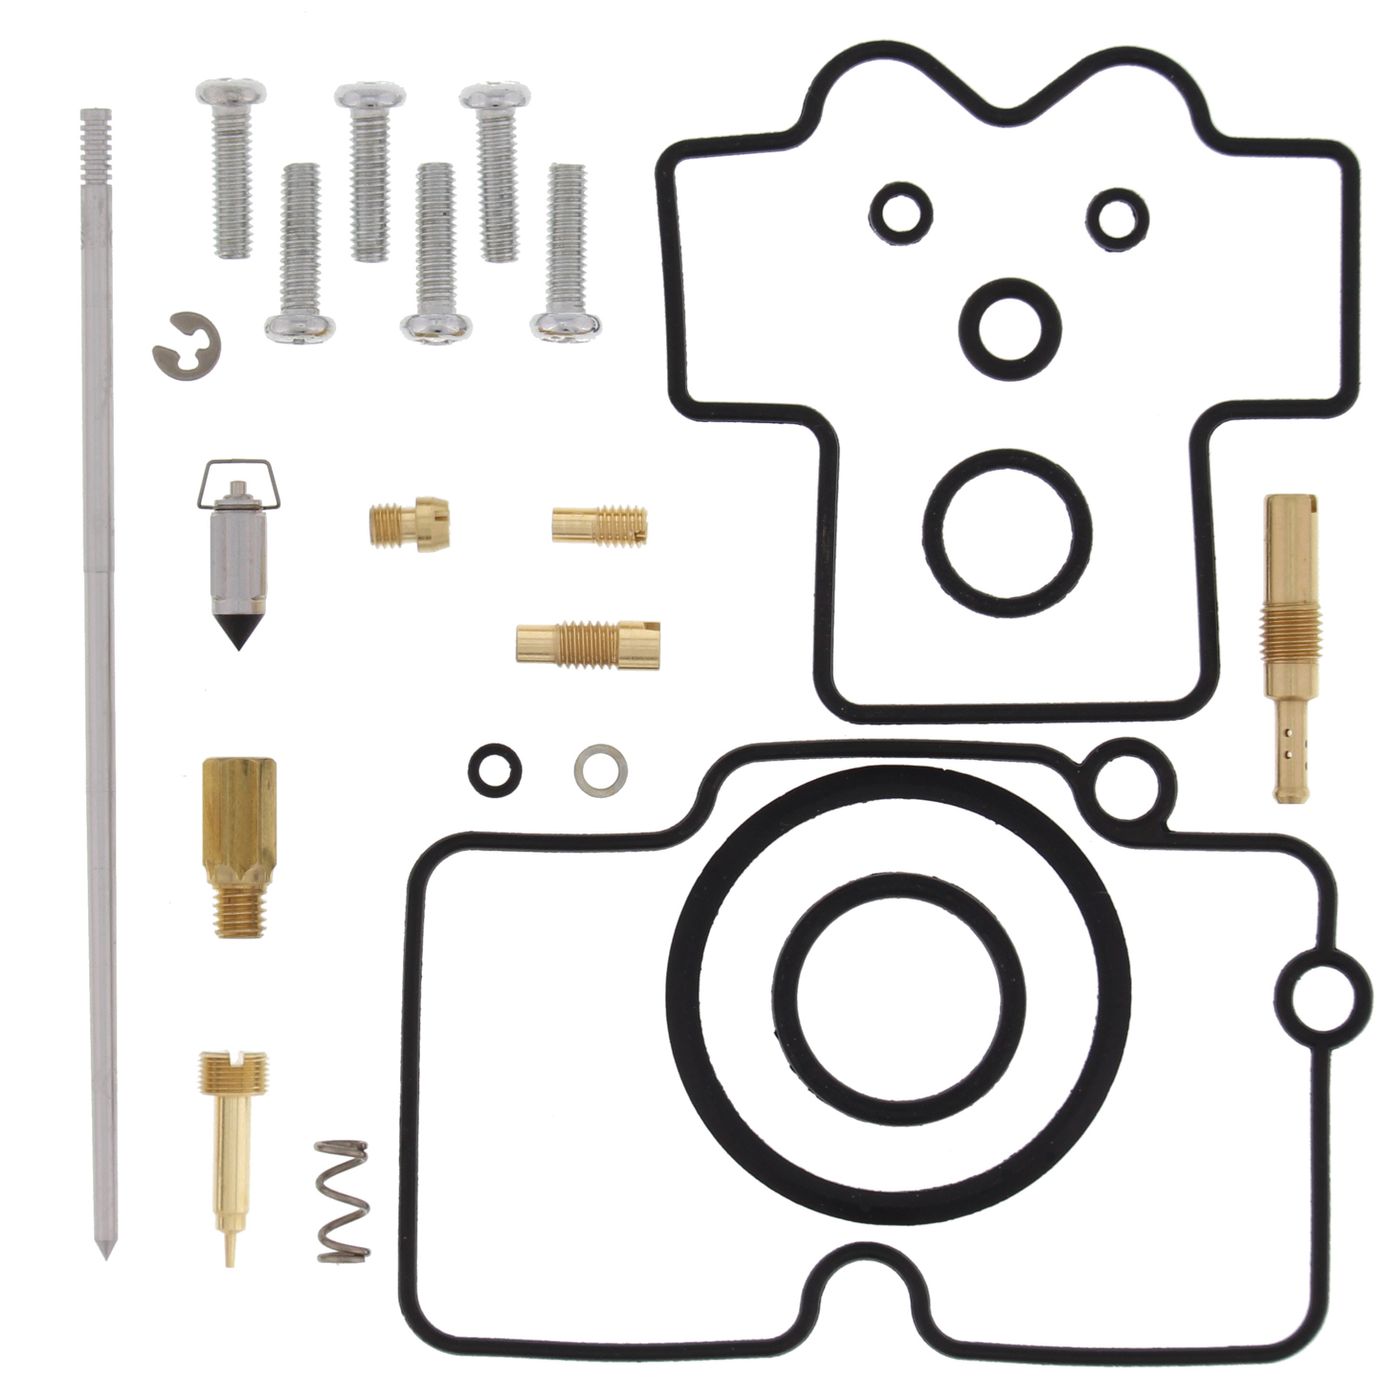 Wrp Carb Repair Kits - WRP261270 image